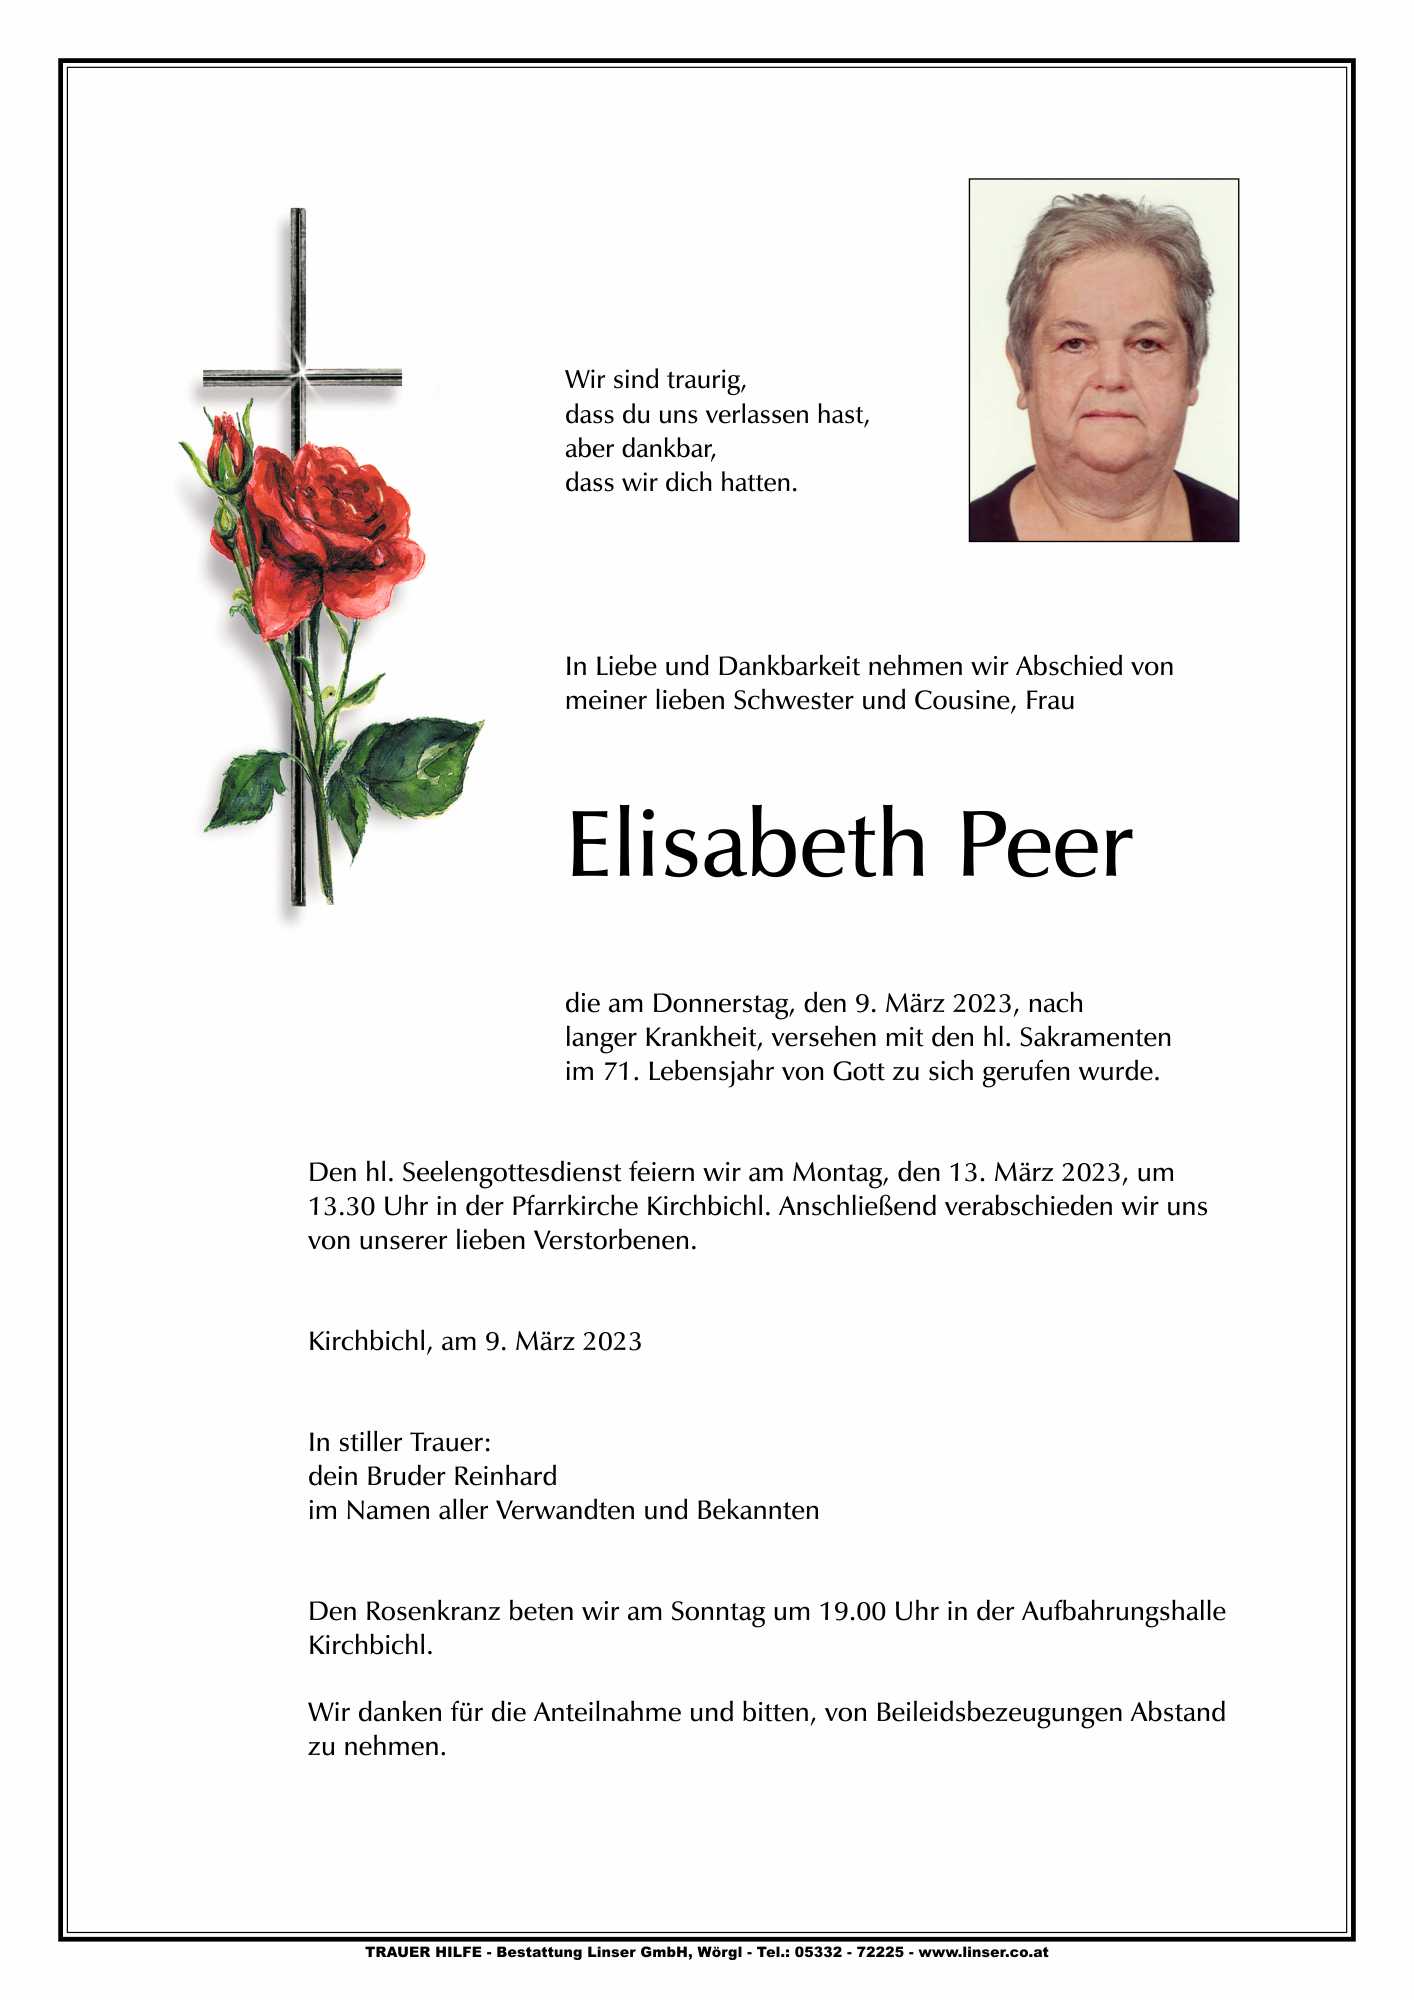 Elisabeth Peer